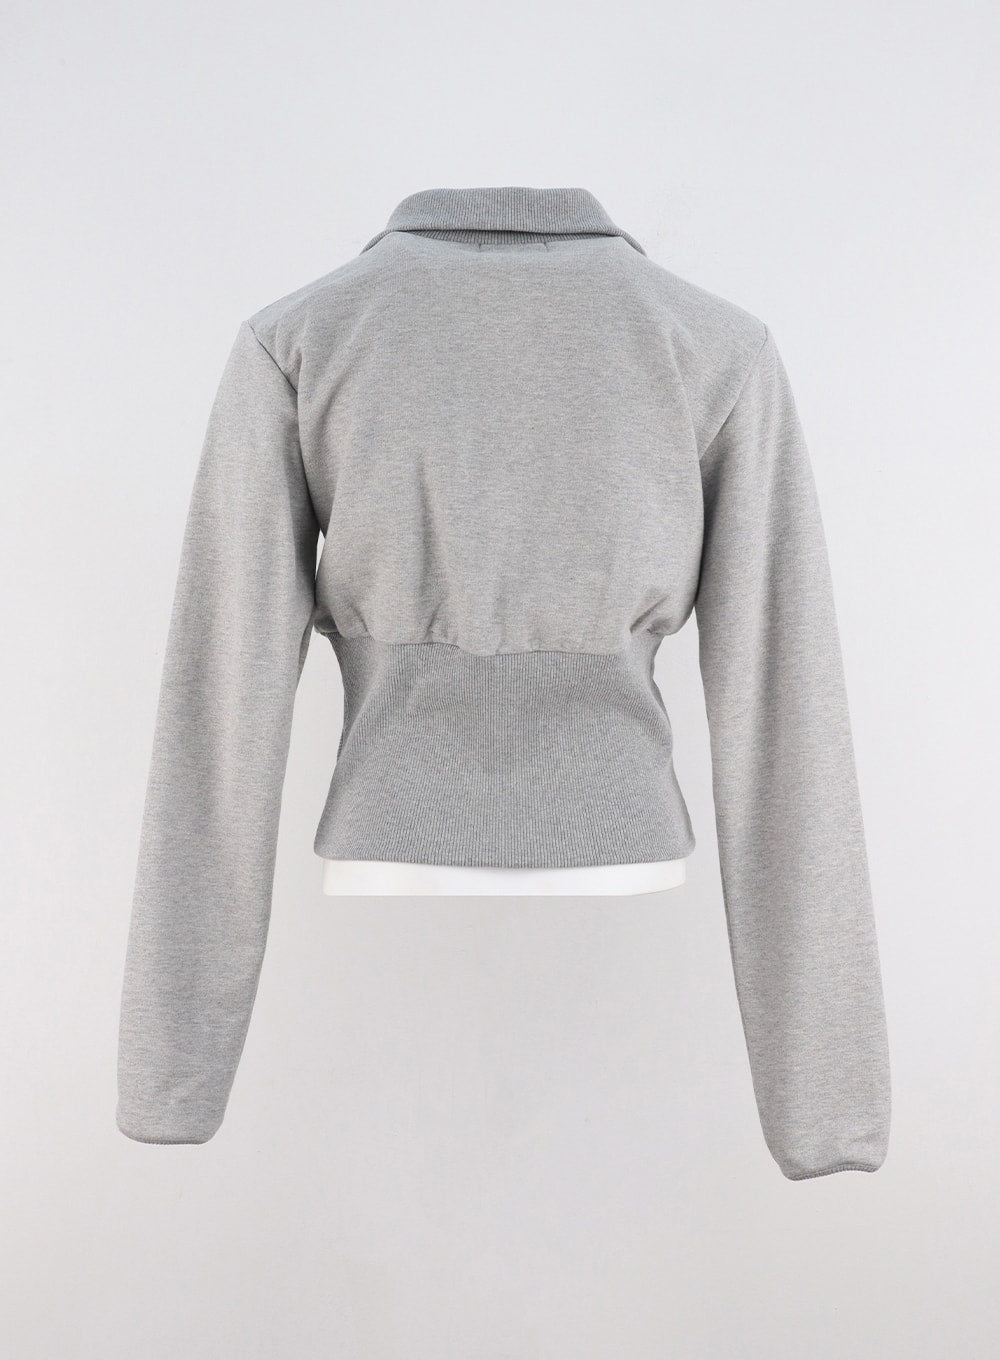 wide-collar-zip-up-sweatshirt-co311